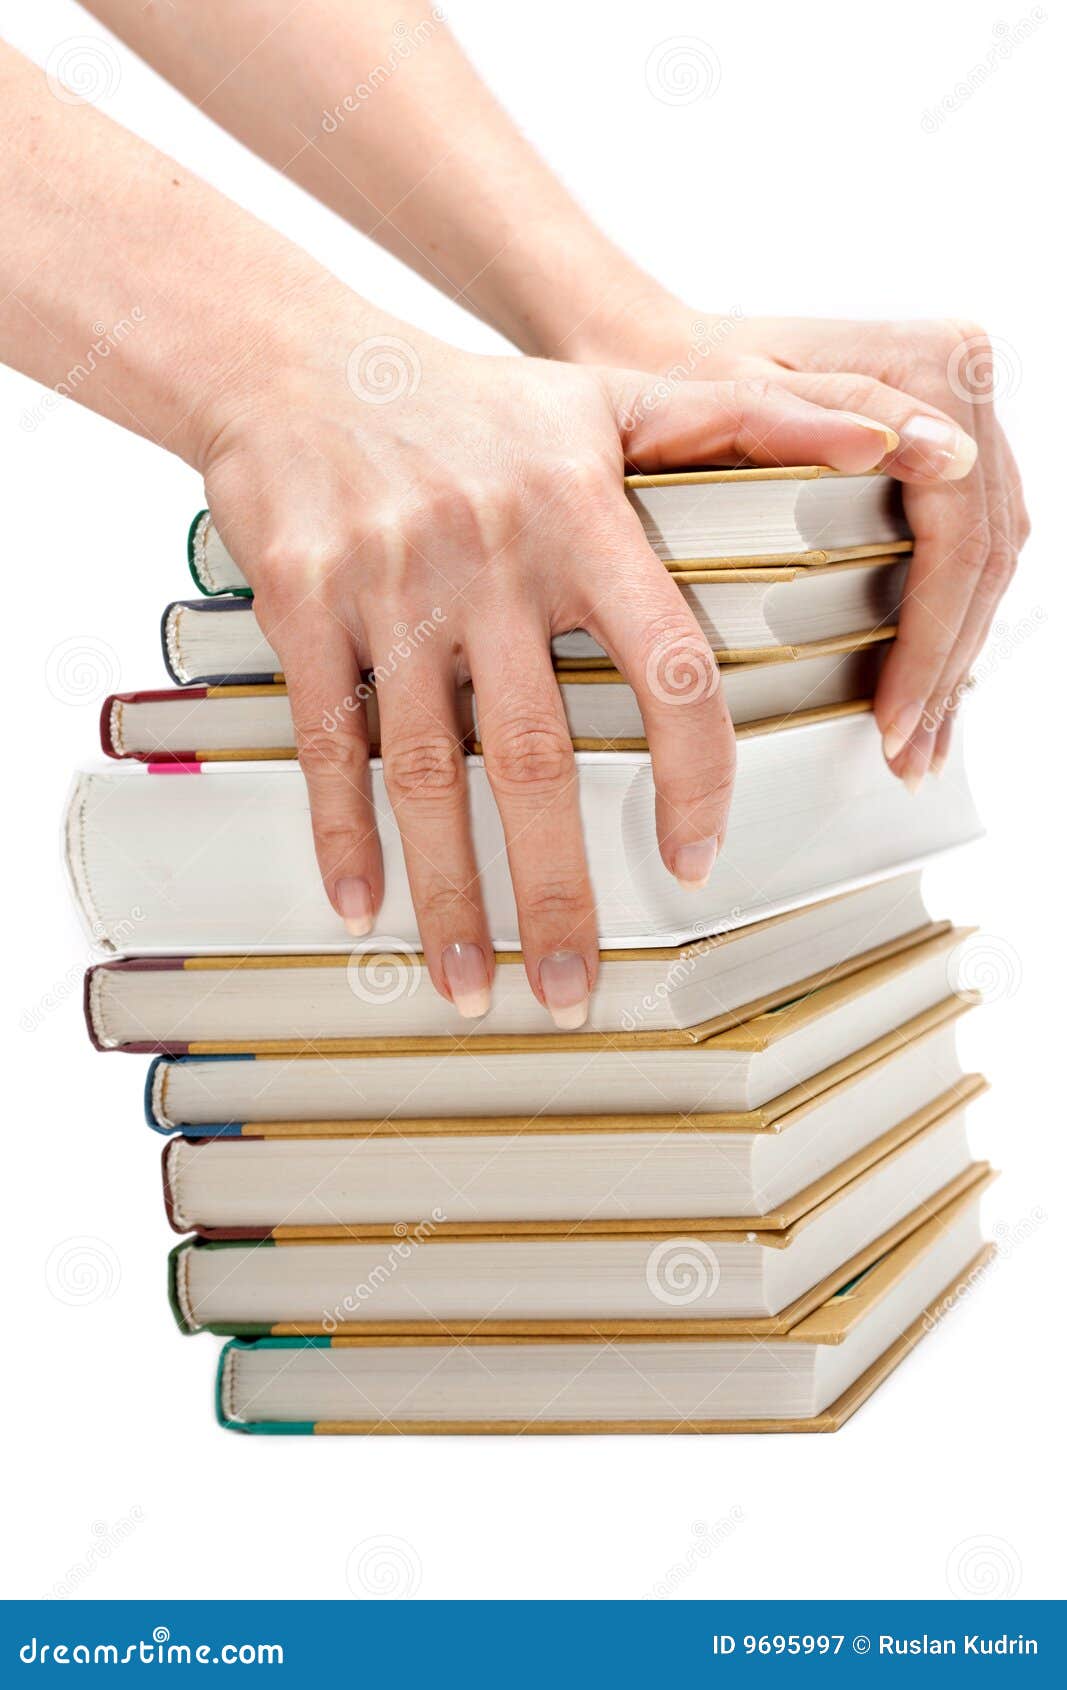 Купить книгу с рук. Стопка книг в руках. Книга в руках. Стопка книг и рука с книгой. Иллюстрации люди с стопкой книг в руках.